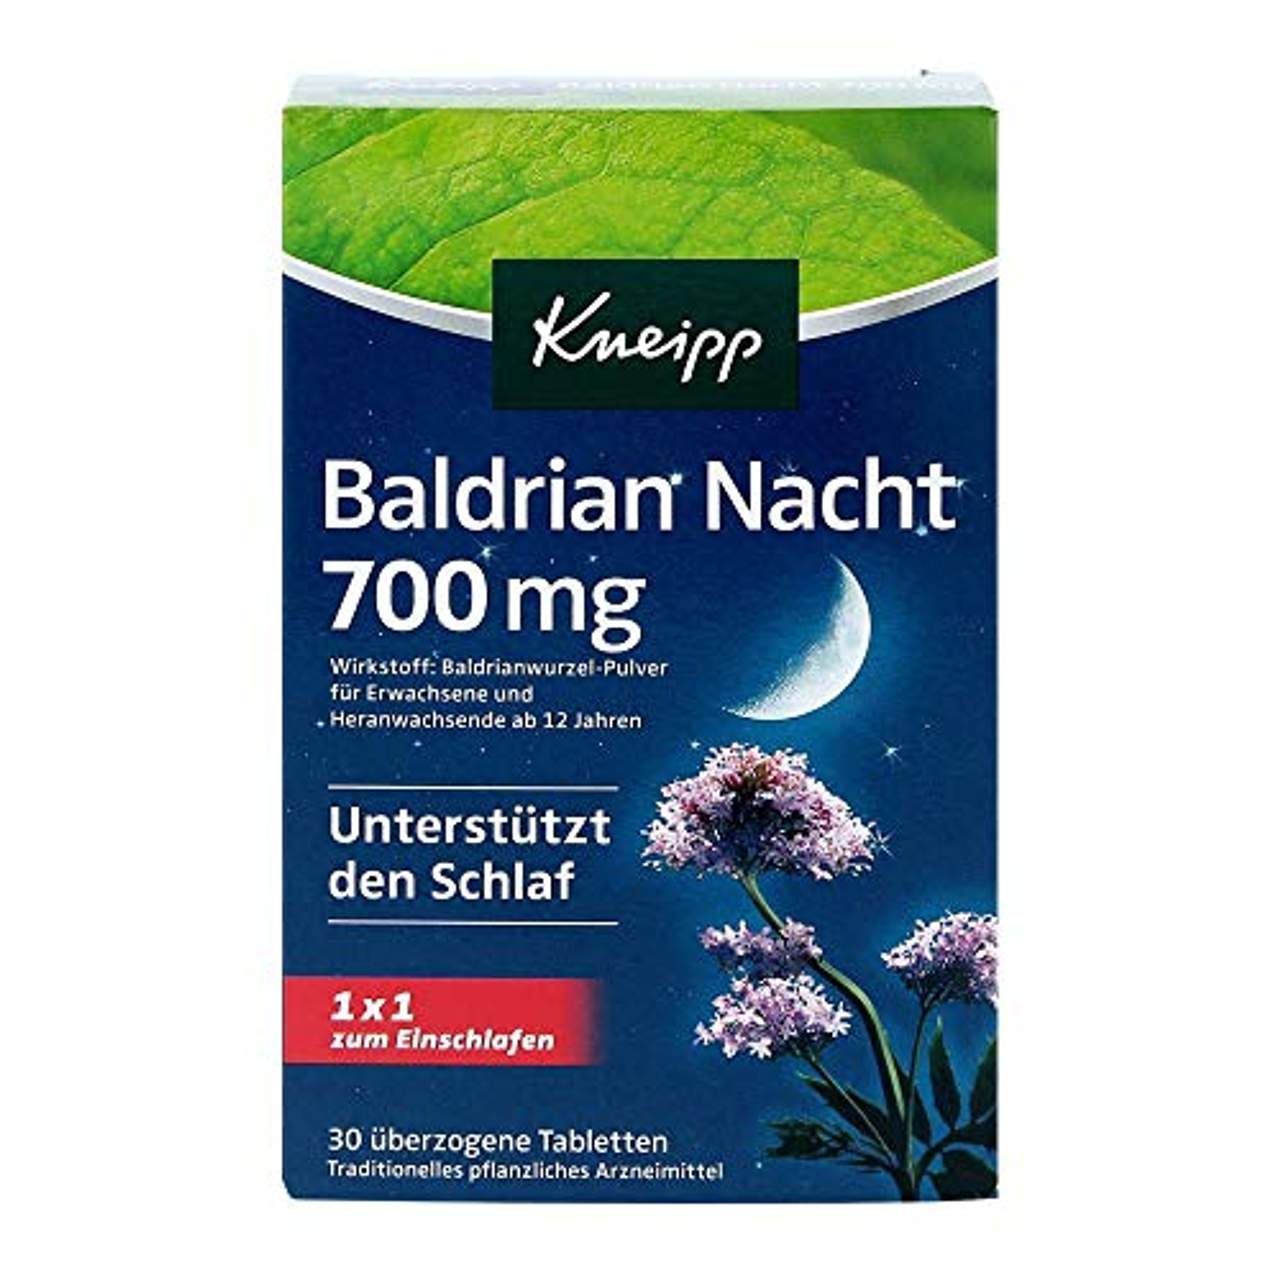 Kneipp Baldrian Nacht 700 mg überzogene Tab